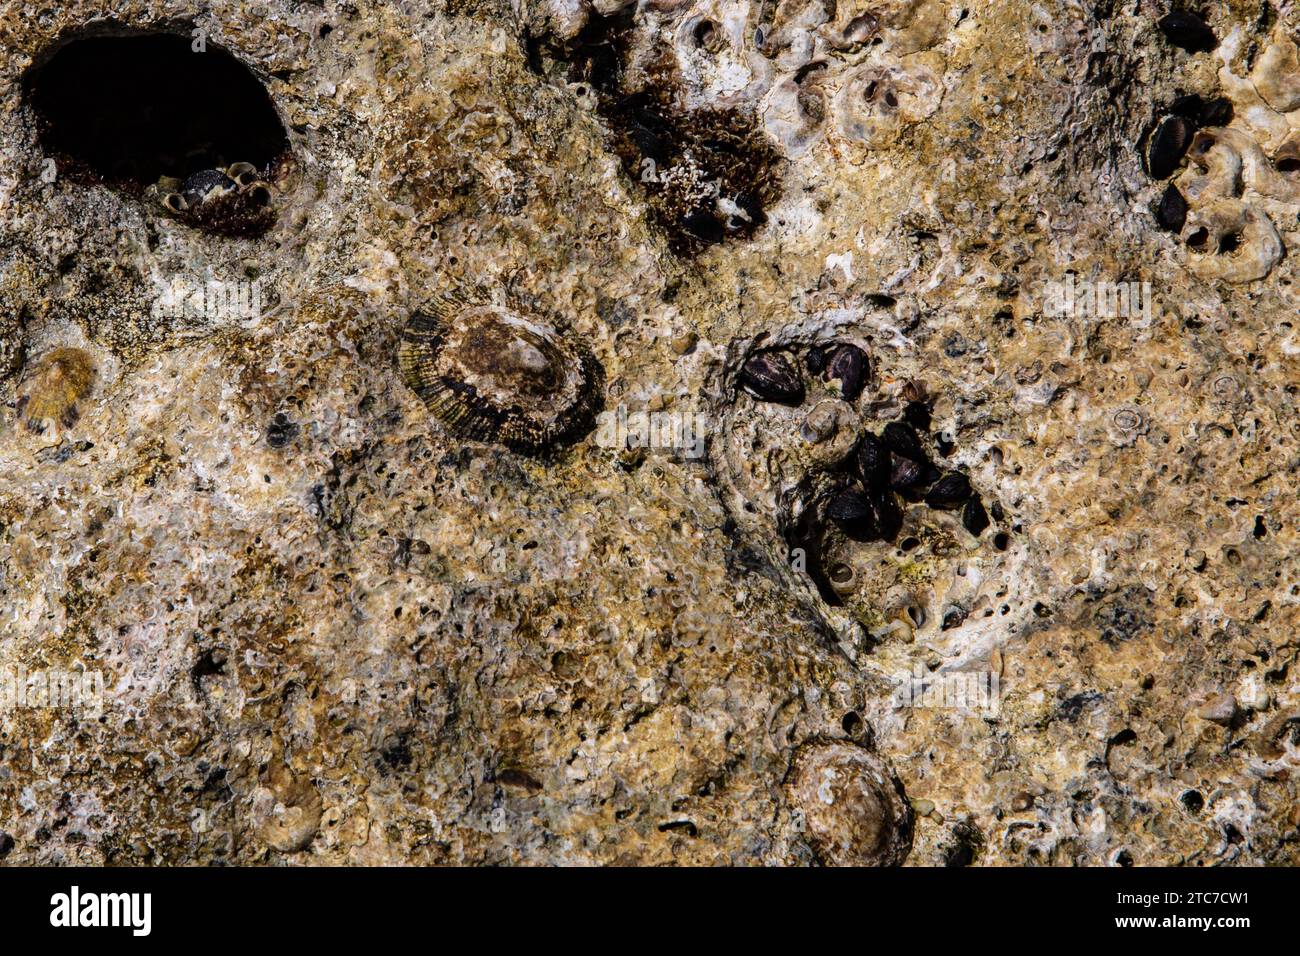 Patella caerulea ist eine Art der Limpet aus der Familie der Patellidae. Sie ist unter den gebräuchlichen Namen Mediterranean limpet und Rayed Mediterranean limpet bekannt Stockfoto